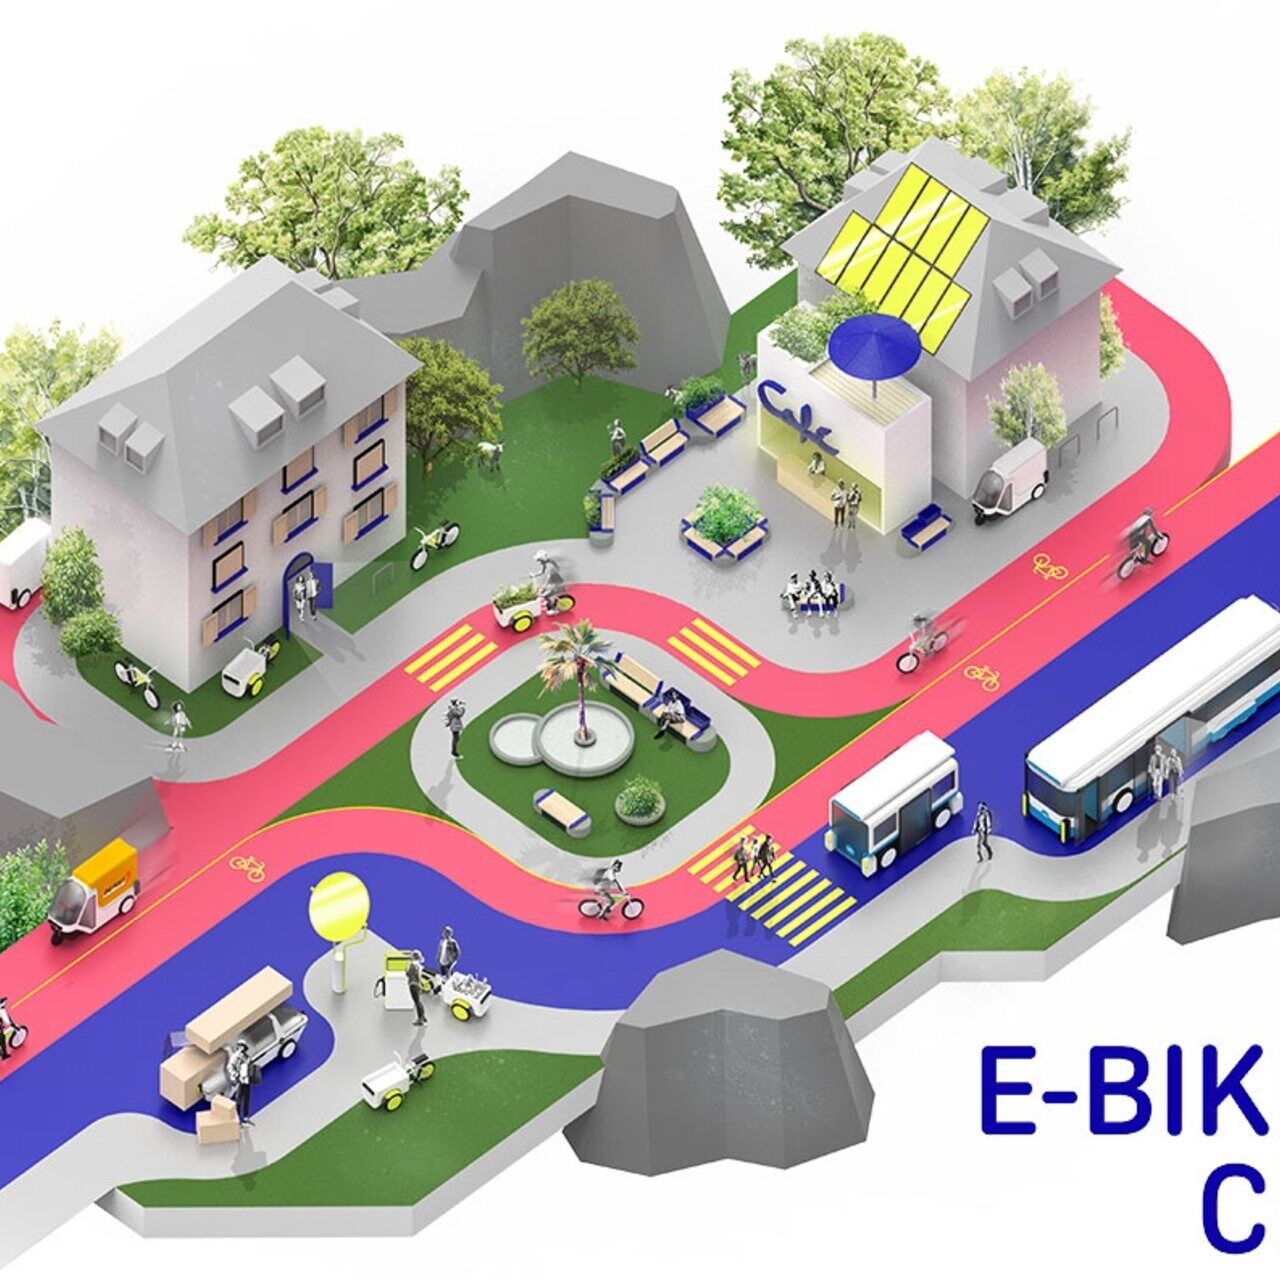 ລົດຖີບໄຟຟ້າ: ຕົວຢ່າງທີ່ທັນສະໄໝຂອງ E-Bike City ທີ່ມີຖະໜົນຫົນທາງດຽວສຳລັບລົດ ແລະຖະໜົນສອງທາງສຳລັບລົດຖີບ